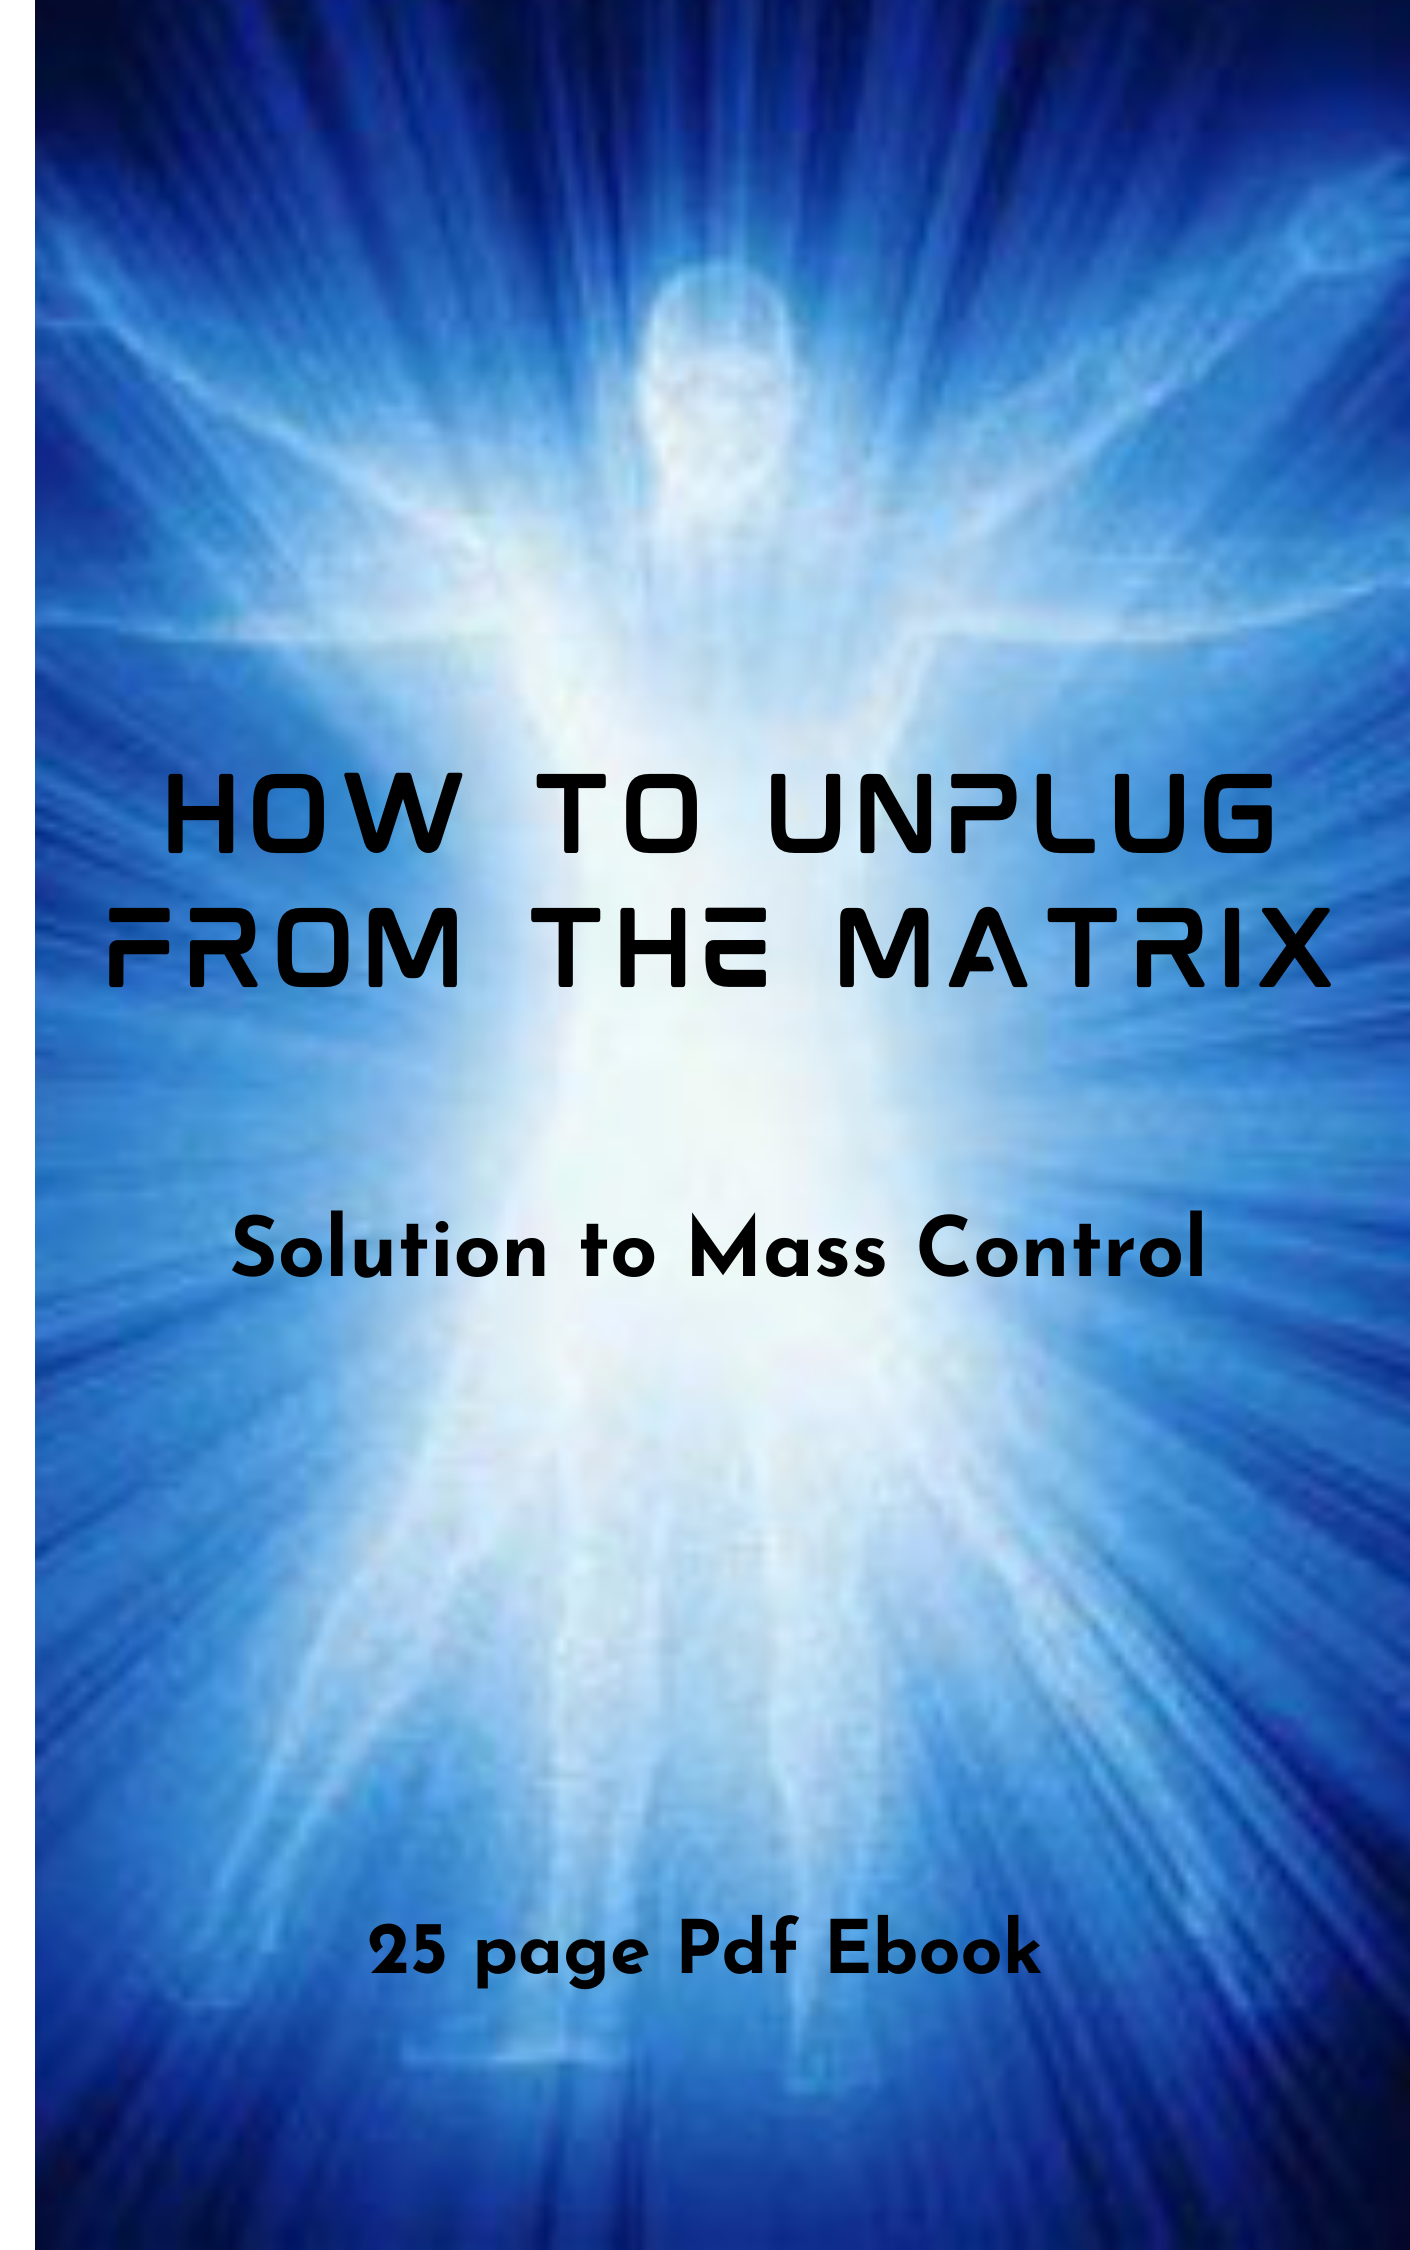 Unplug From The Matrix - 411 x 657